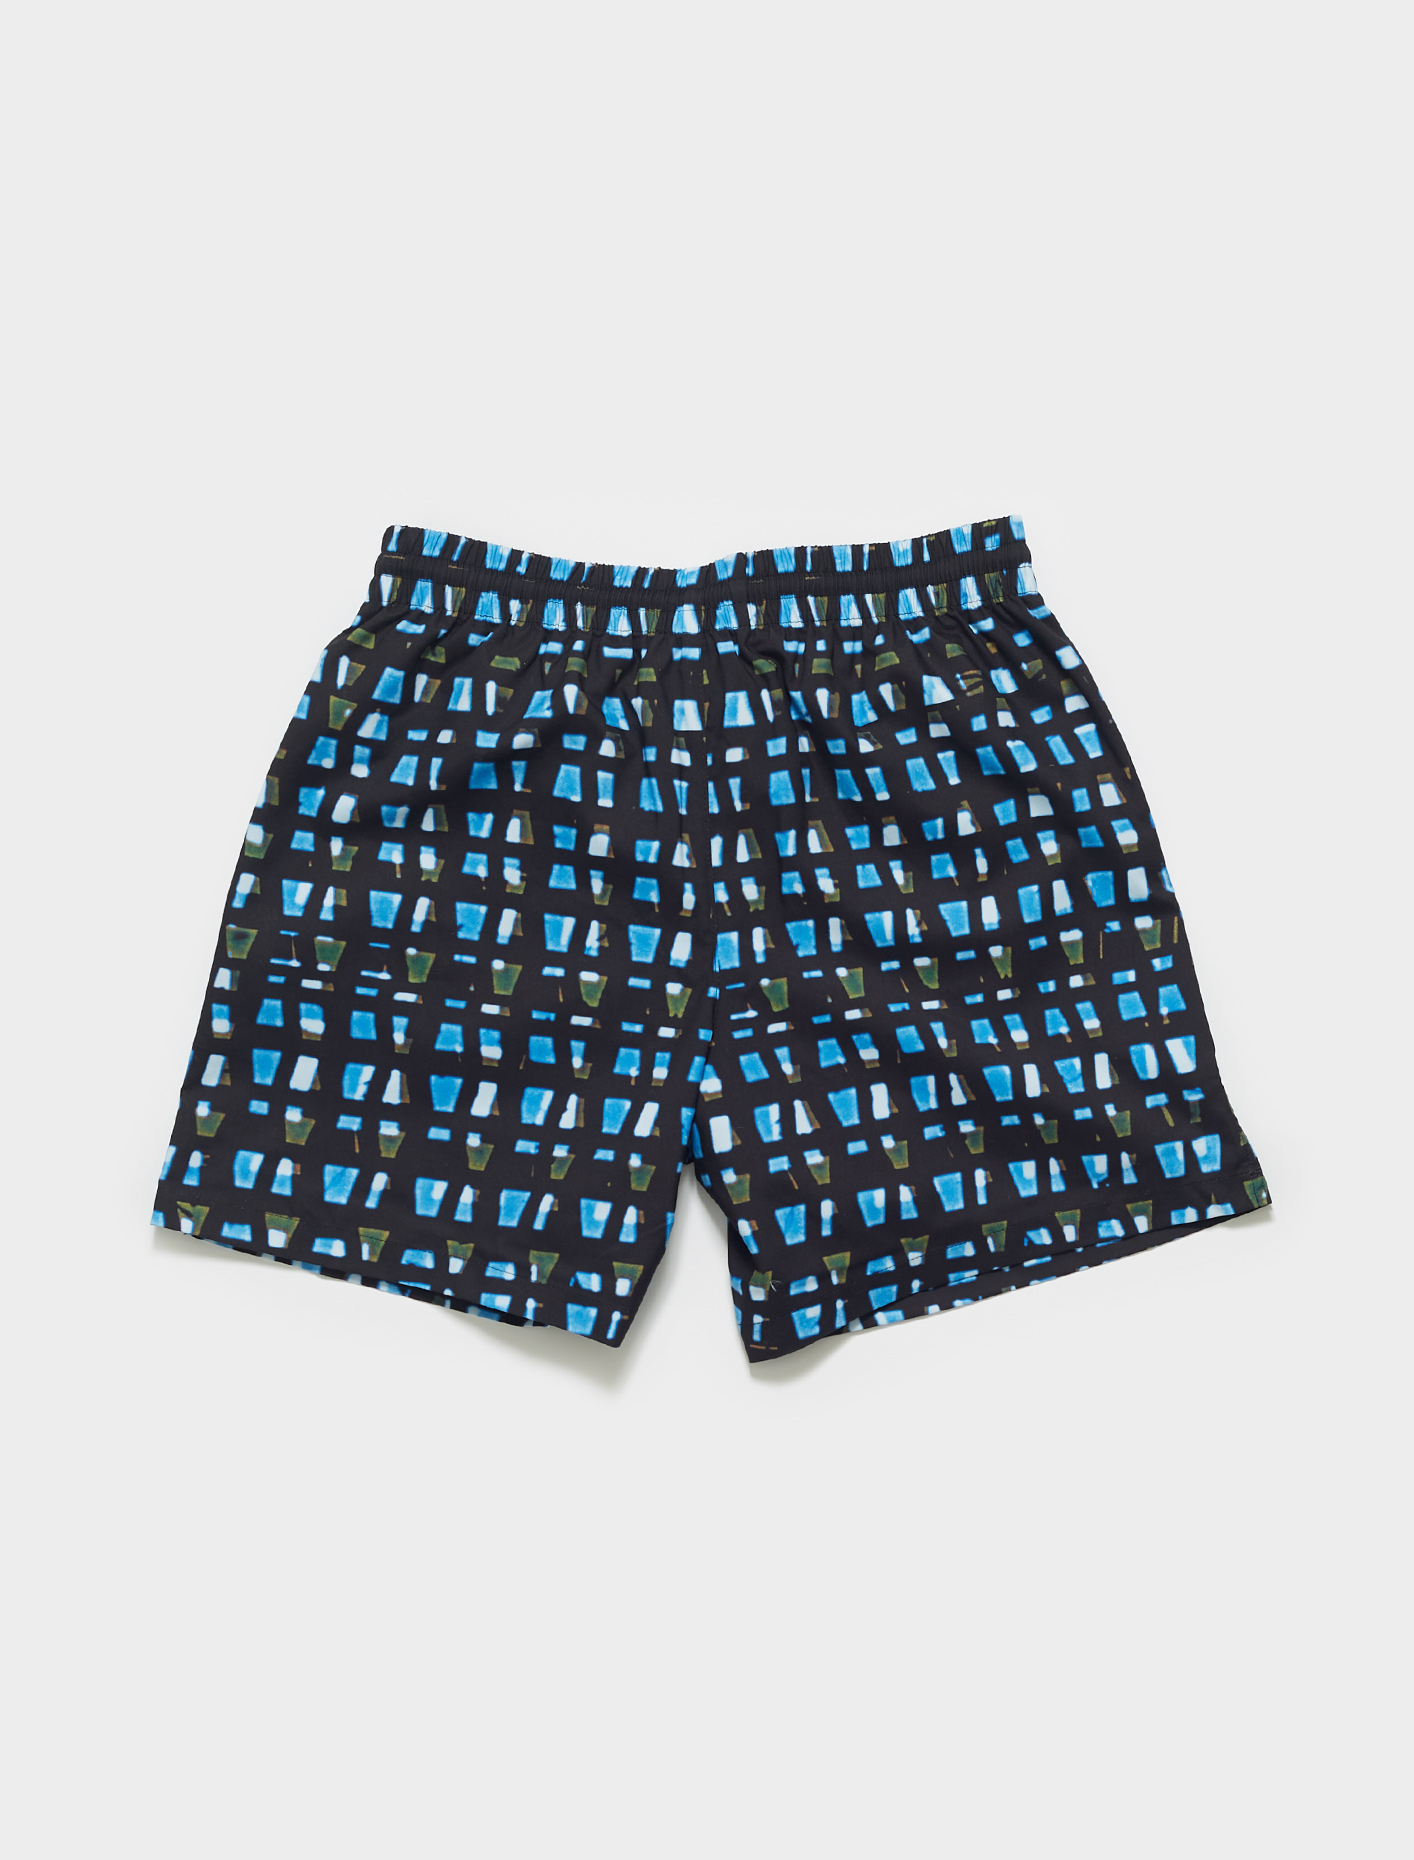 Dries Van Noten Phibbs Len Lye Pixel Print Swim Shorts in Blue | Voo ...